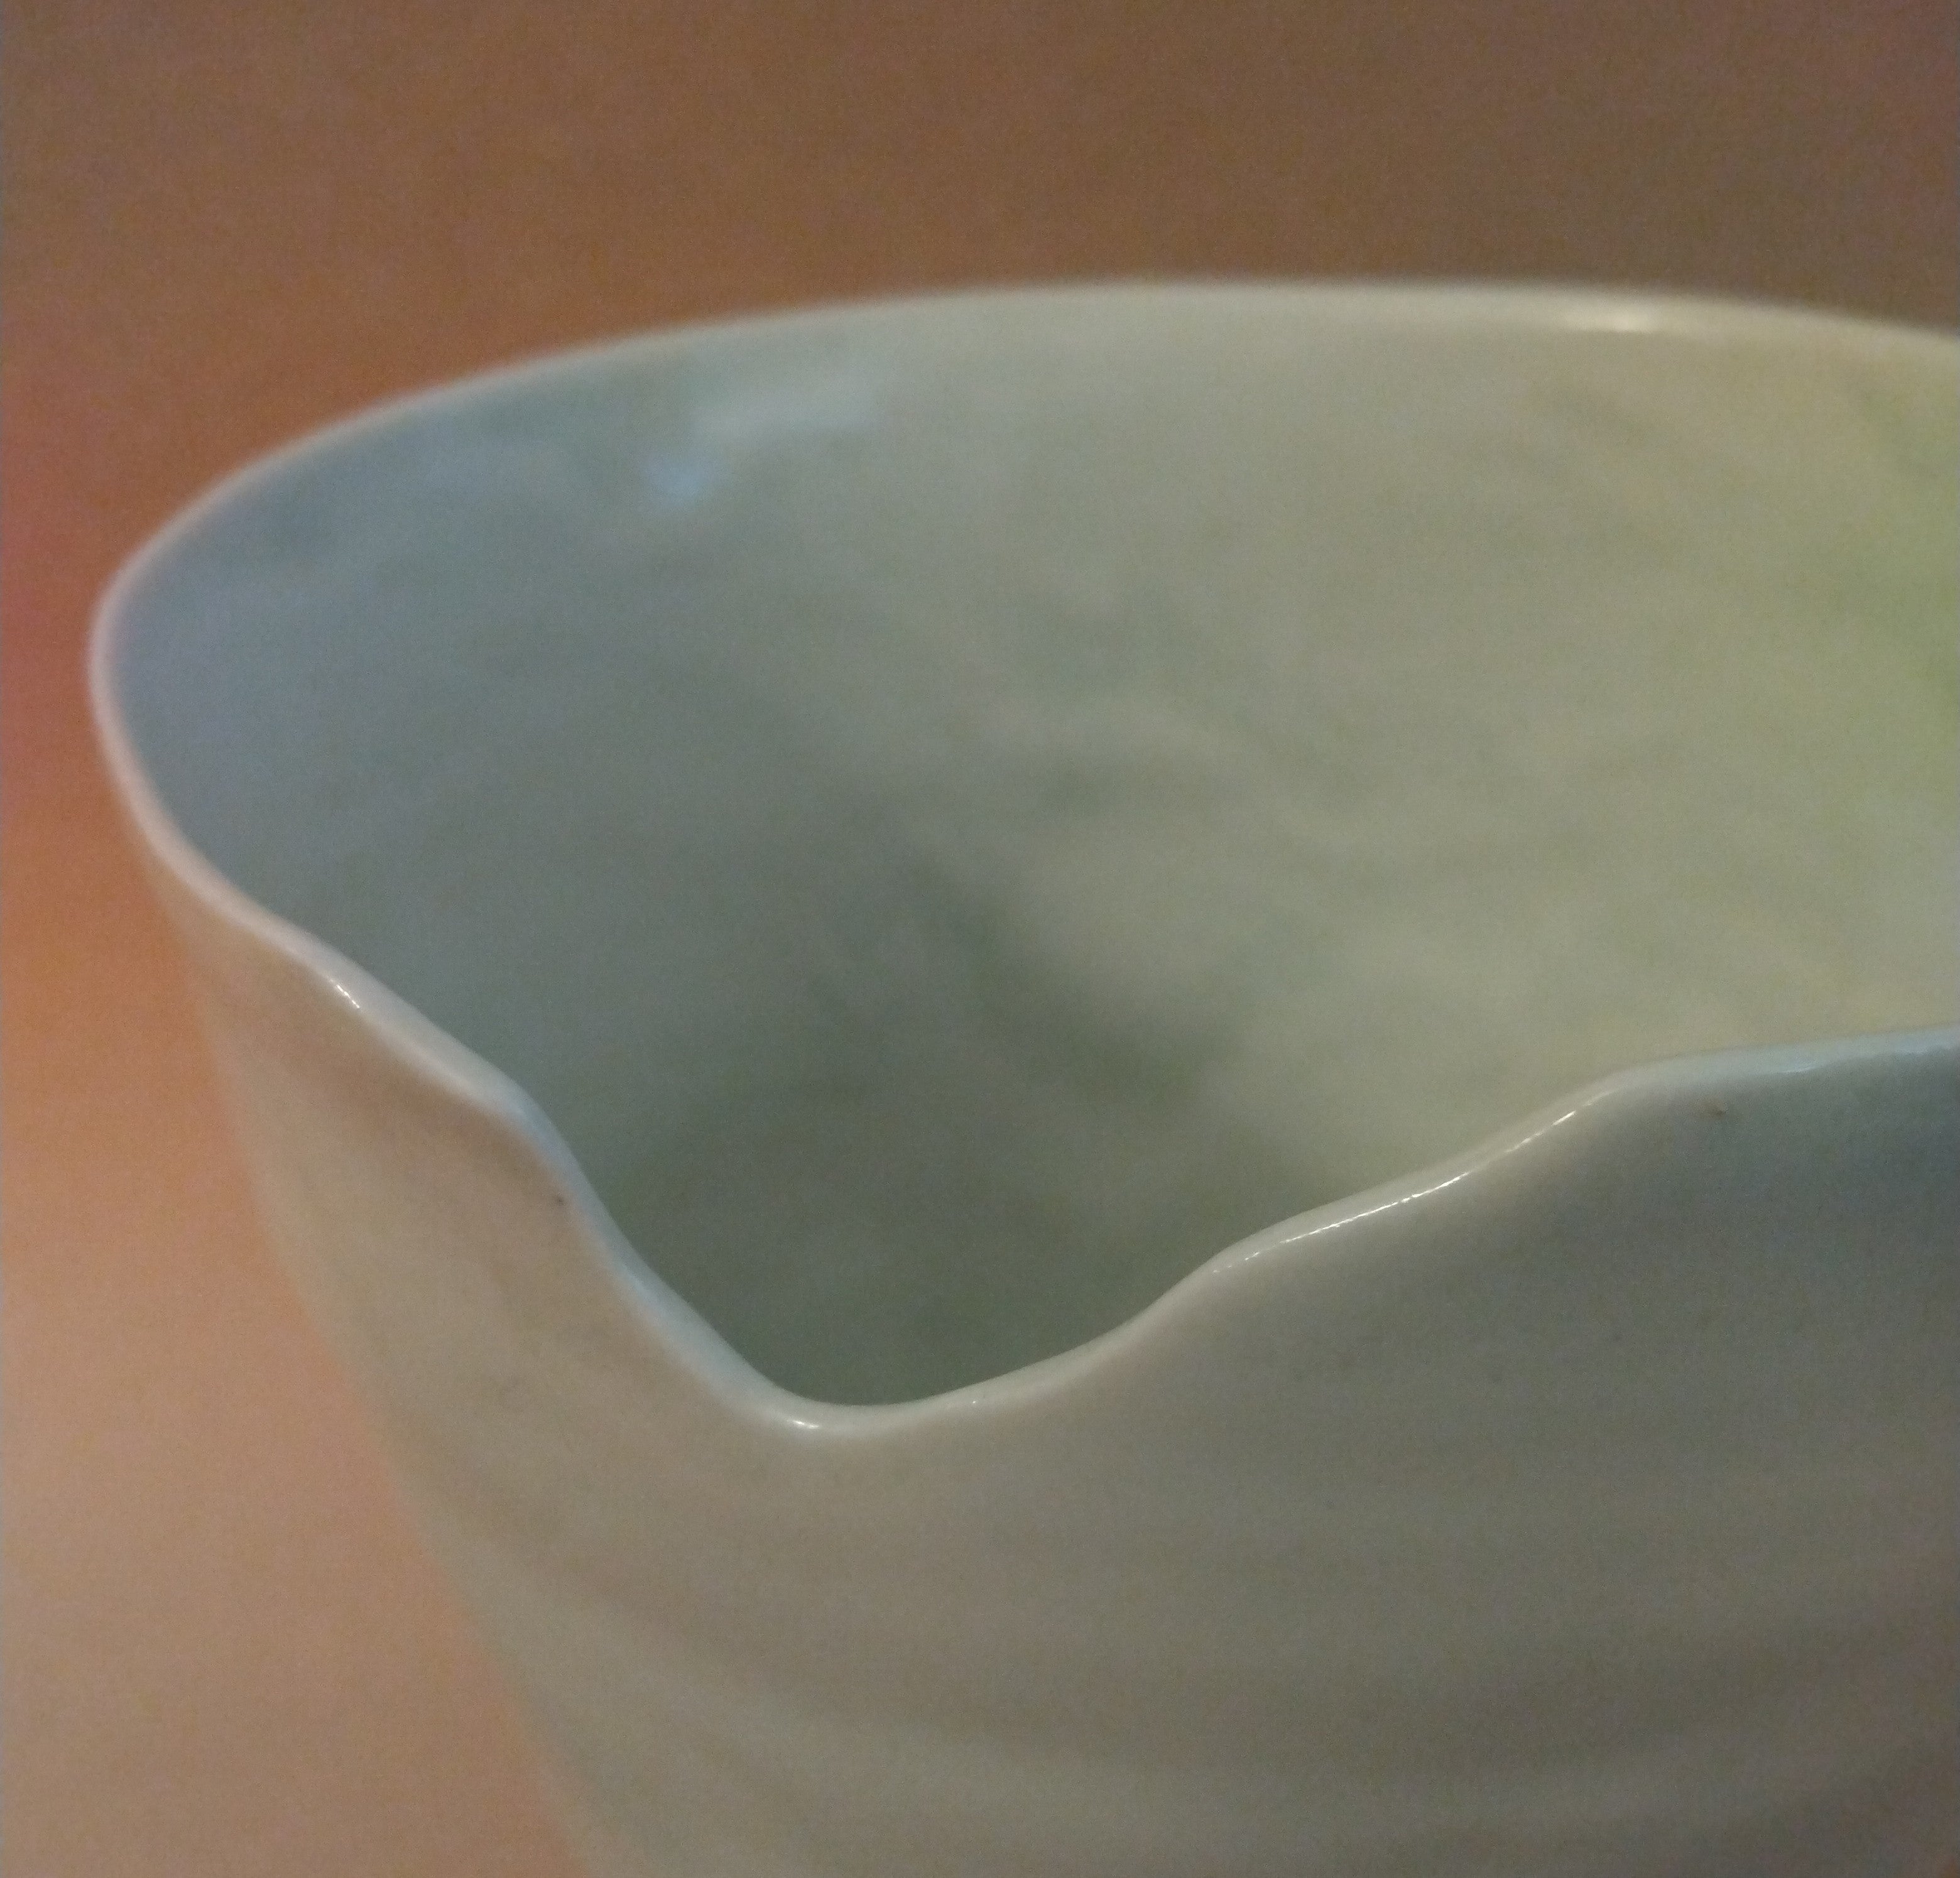 Tall Bowl/Vase with Notched Rim, White Shino Glaze, by Sachiko Furuya